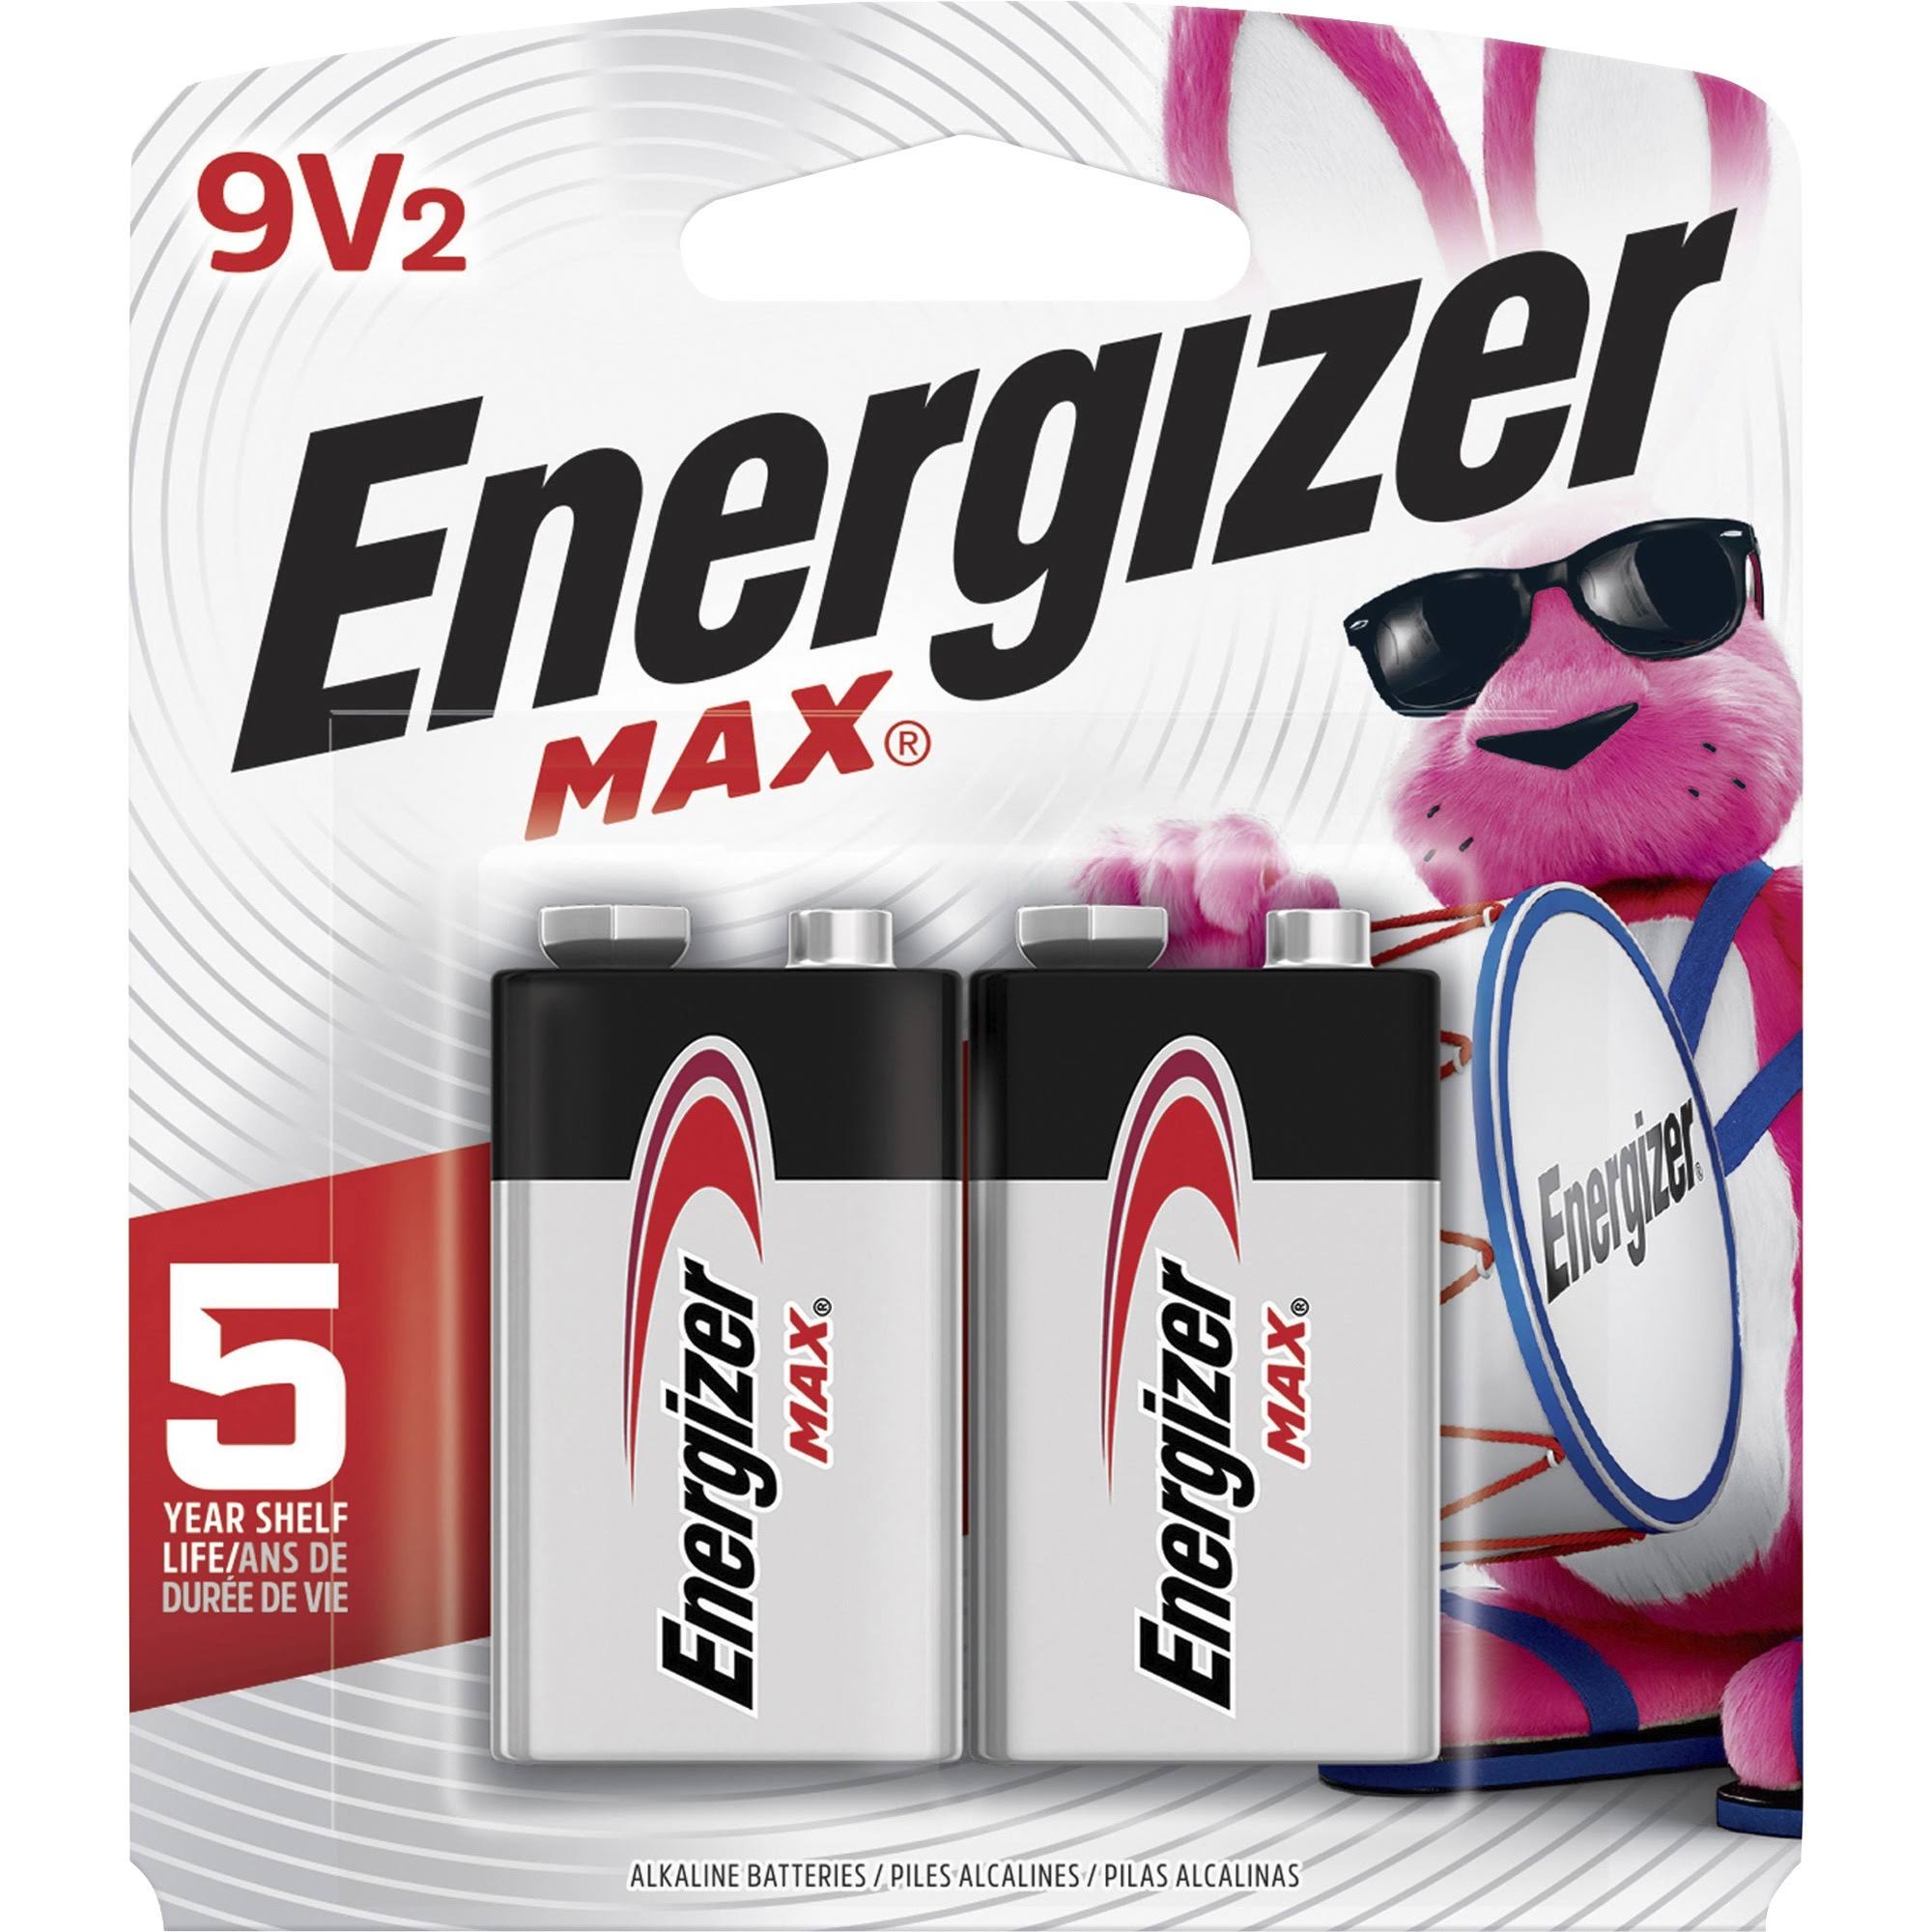 Energizer Max Alkaline Batteries - 9V, 2pk